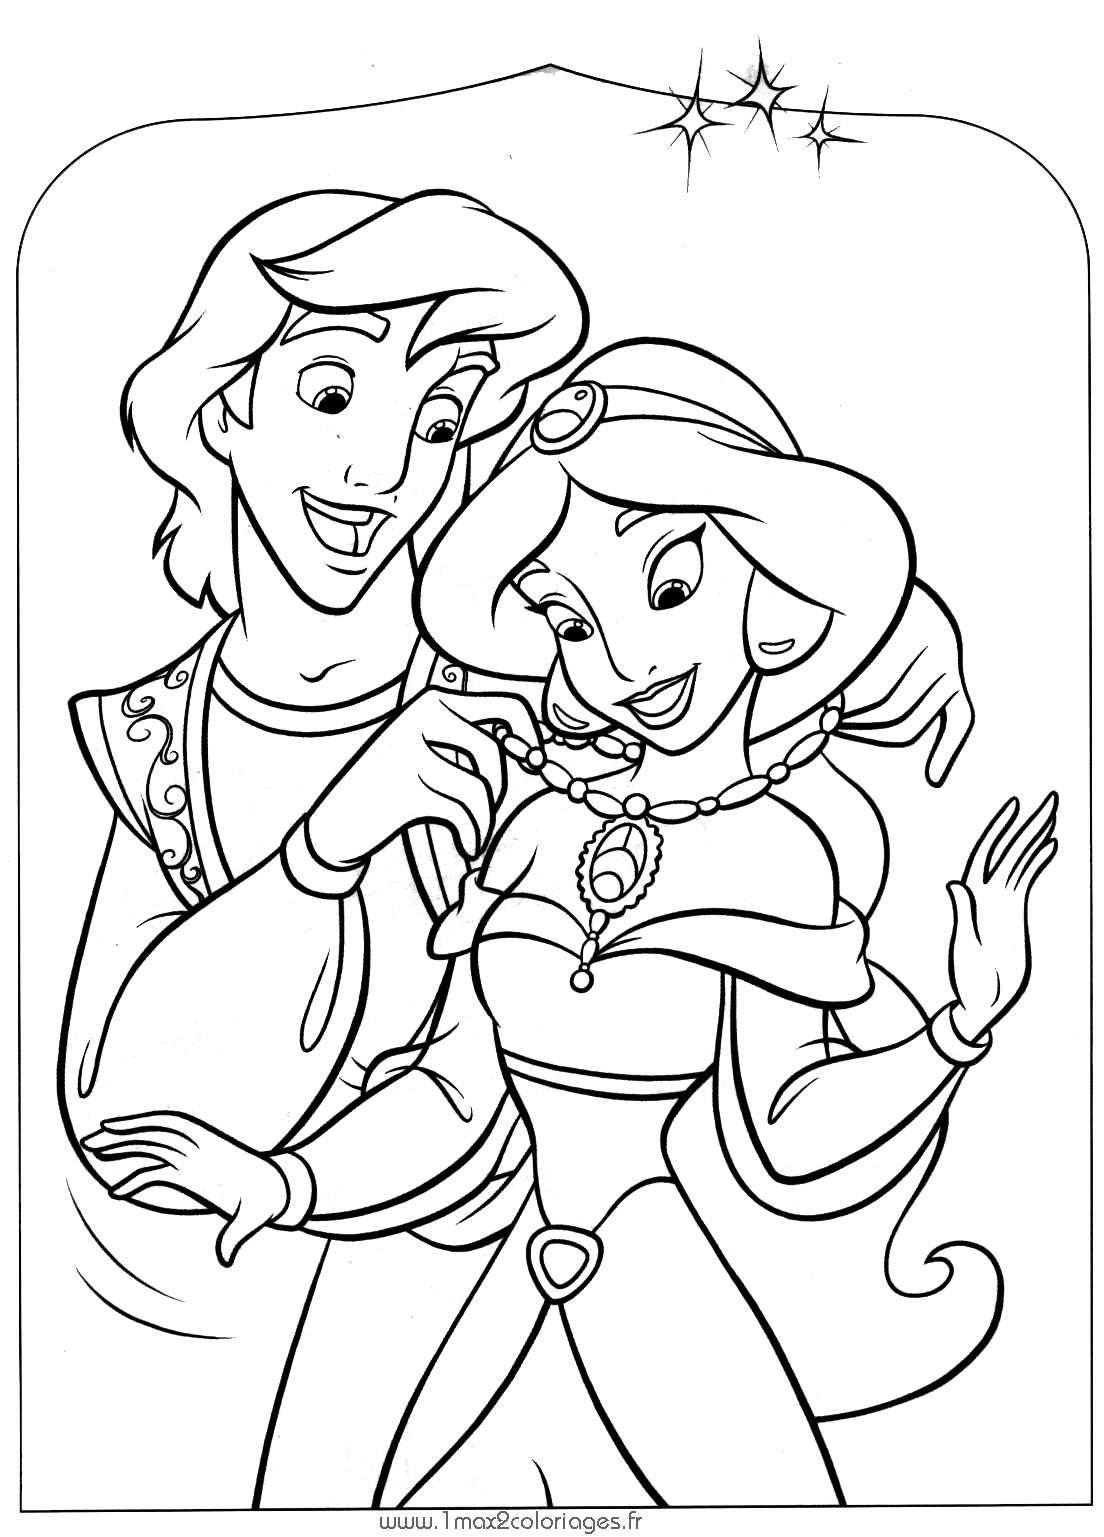 Aladdin and jasmine free to color for kids   Aladdin and Jasmine ...